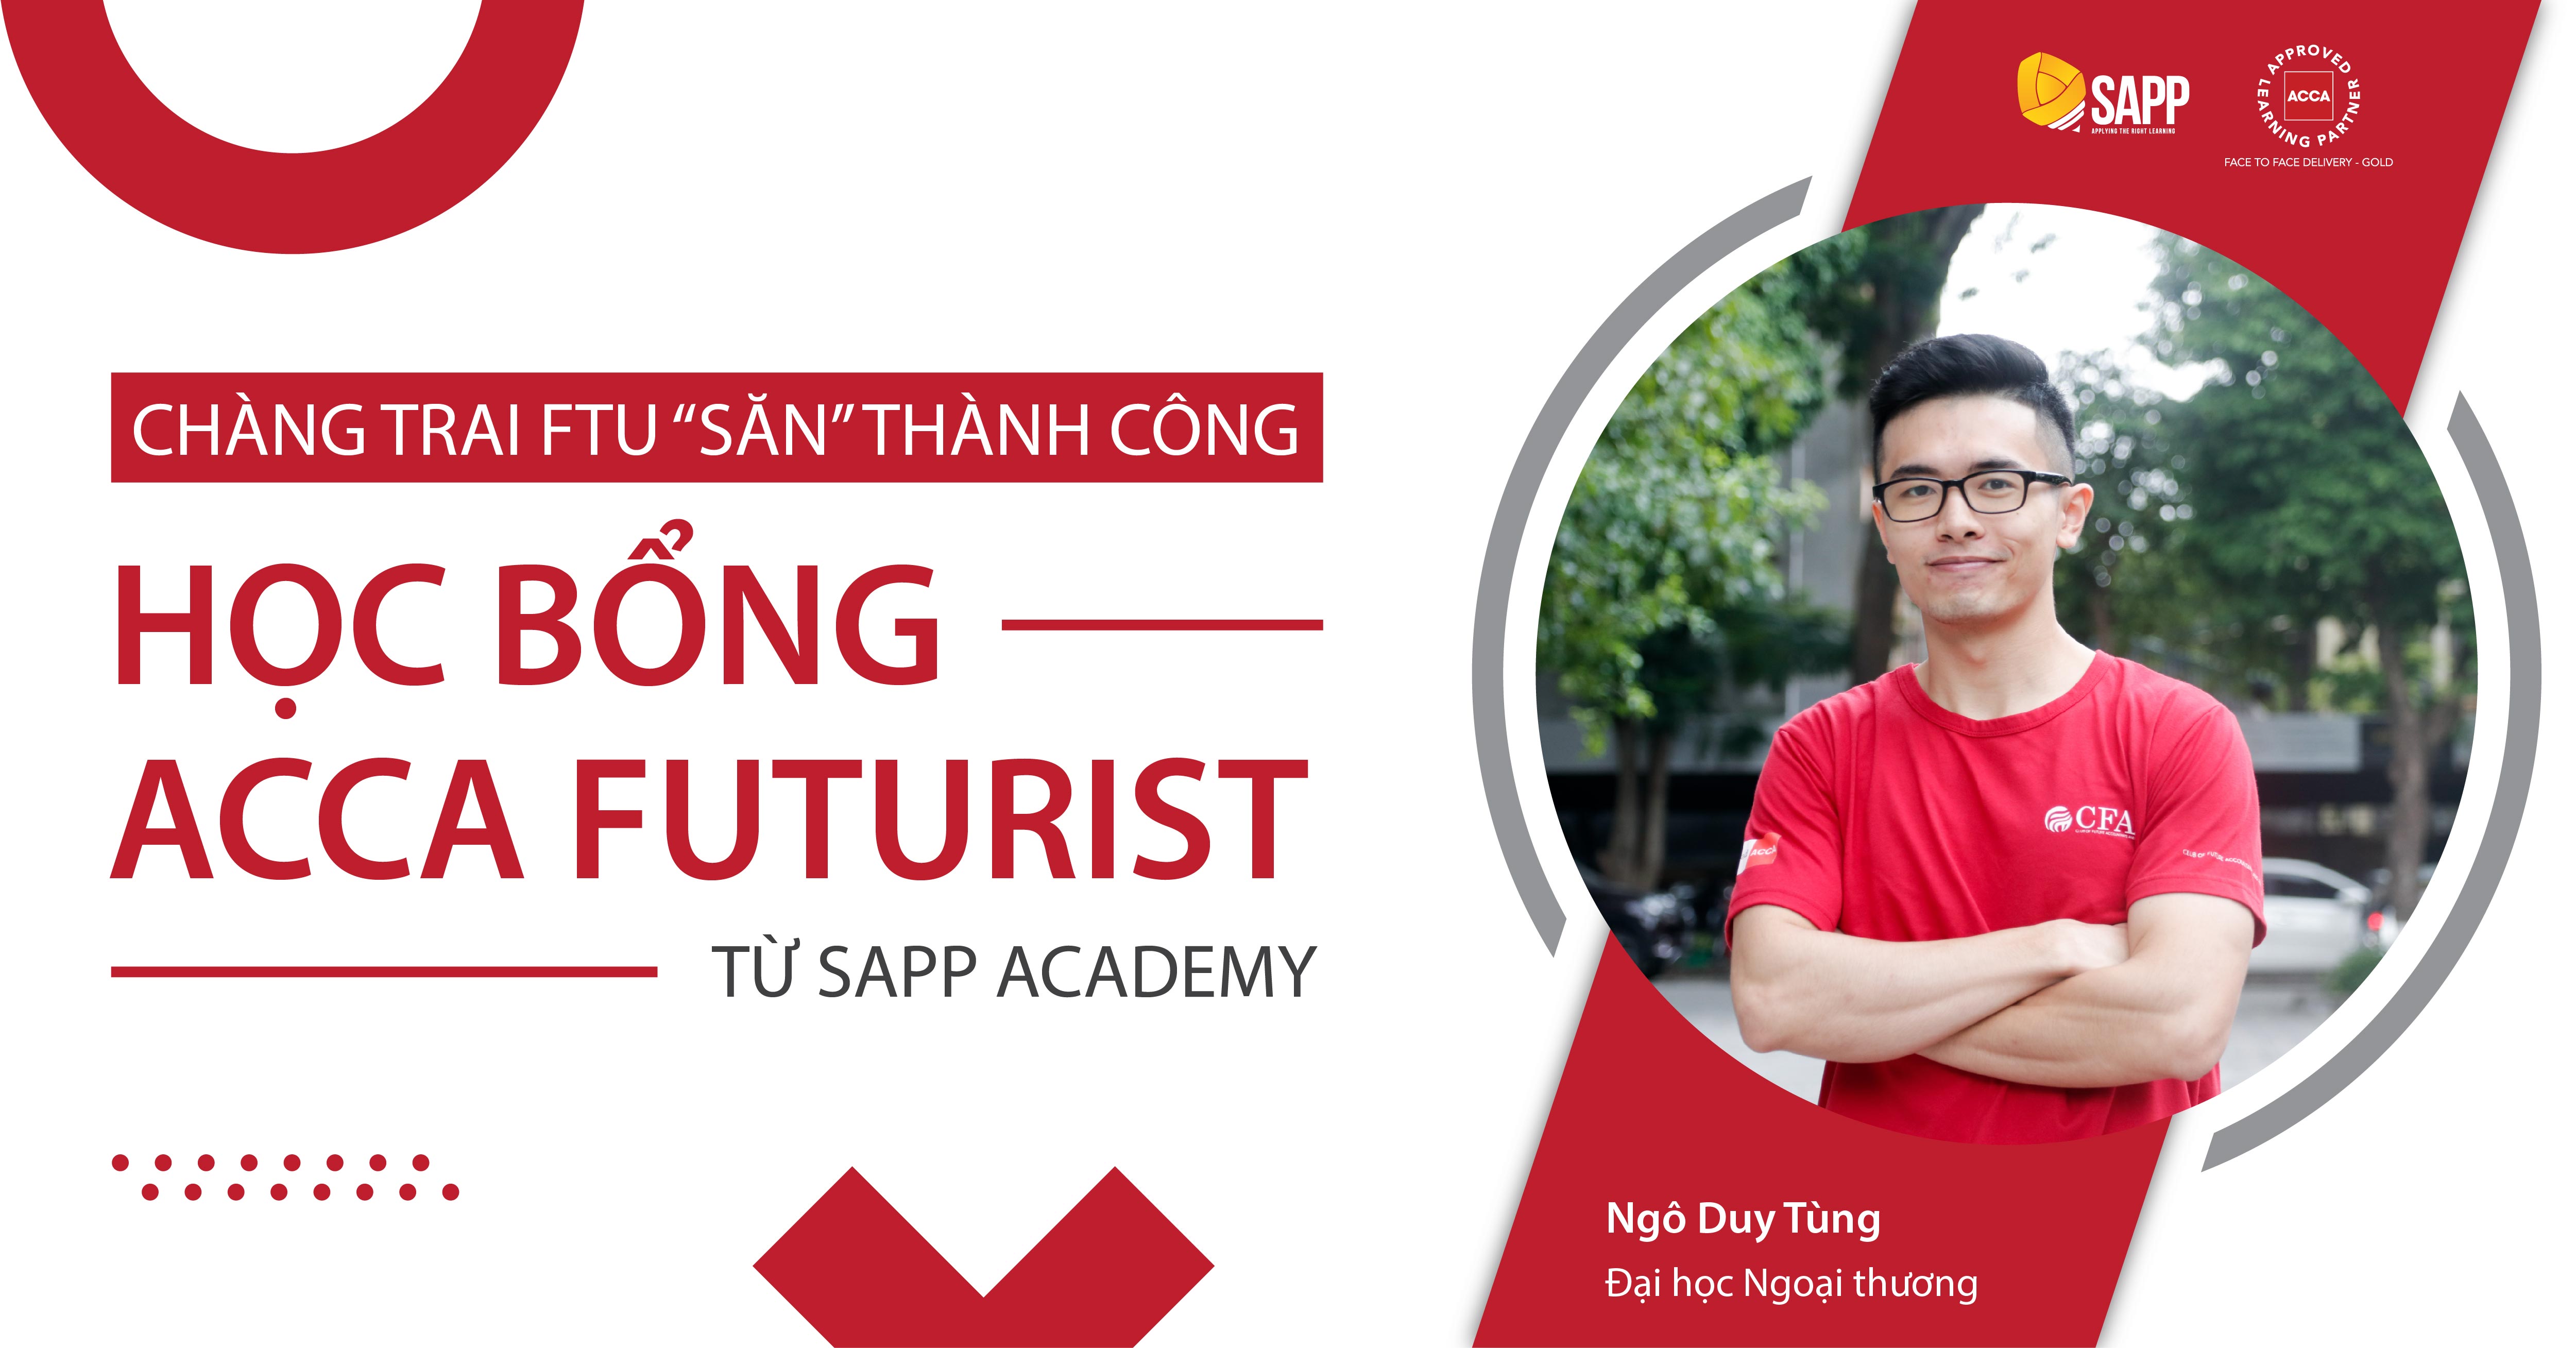 Được ACCA hết lời khen ngợi, chàng trai FTU “săn” thành công học bổng ACCA Futurist từ SAPP Academy